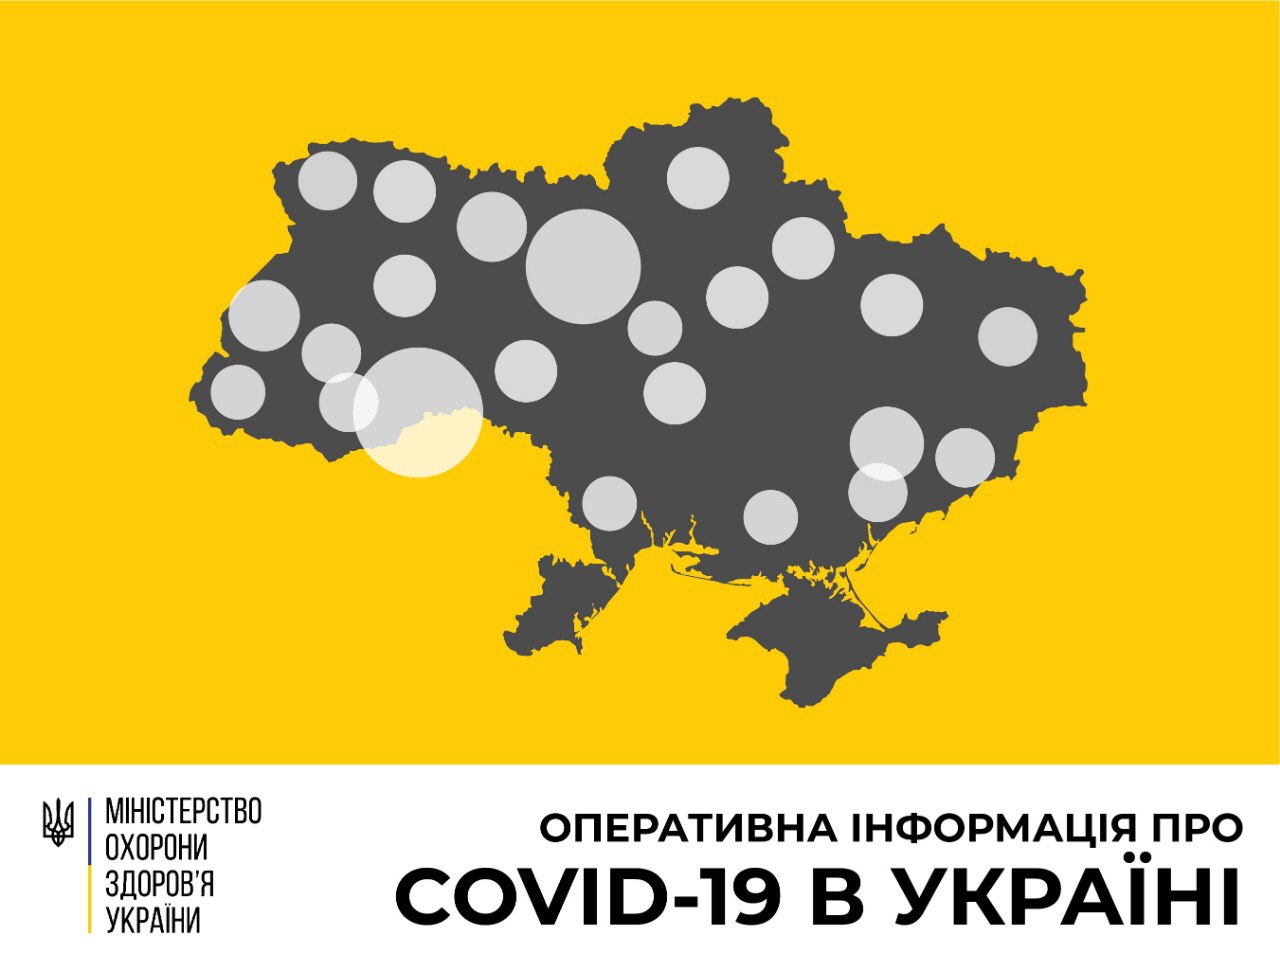 В Україні зафіксовано 897 випадків коронавірусної хвороби COVID-19 - МОЗ